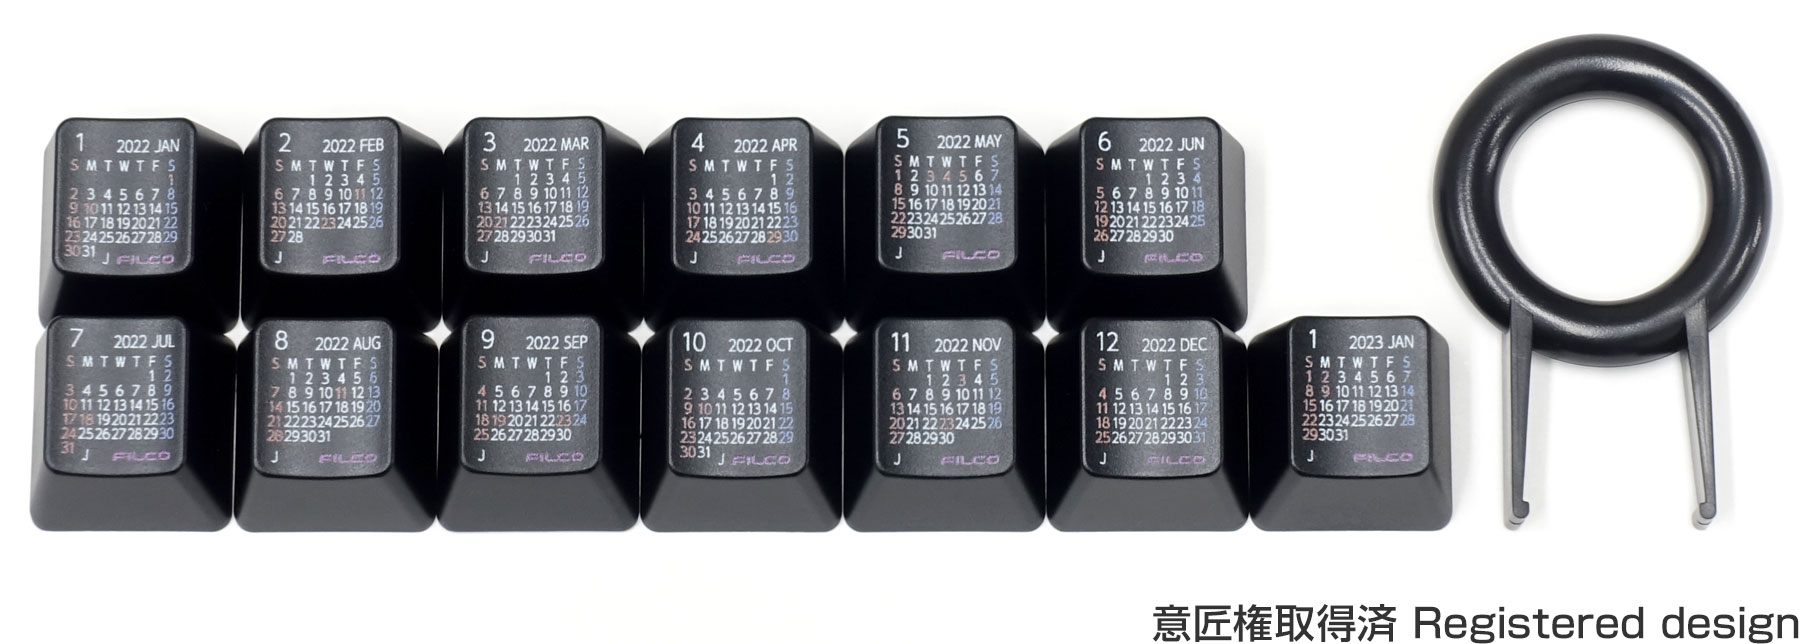 【数量限定】FILCO Calendar Keycap Set 2022 日本の祝日入り・上面印刷・ブラック